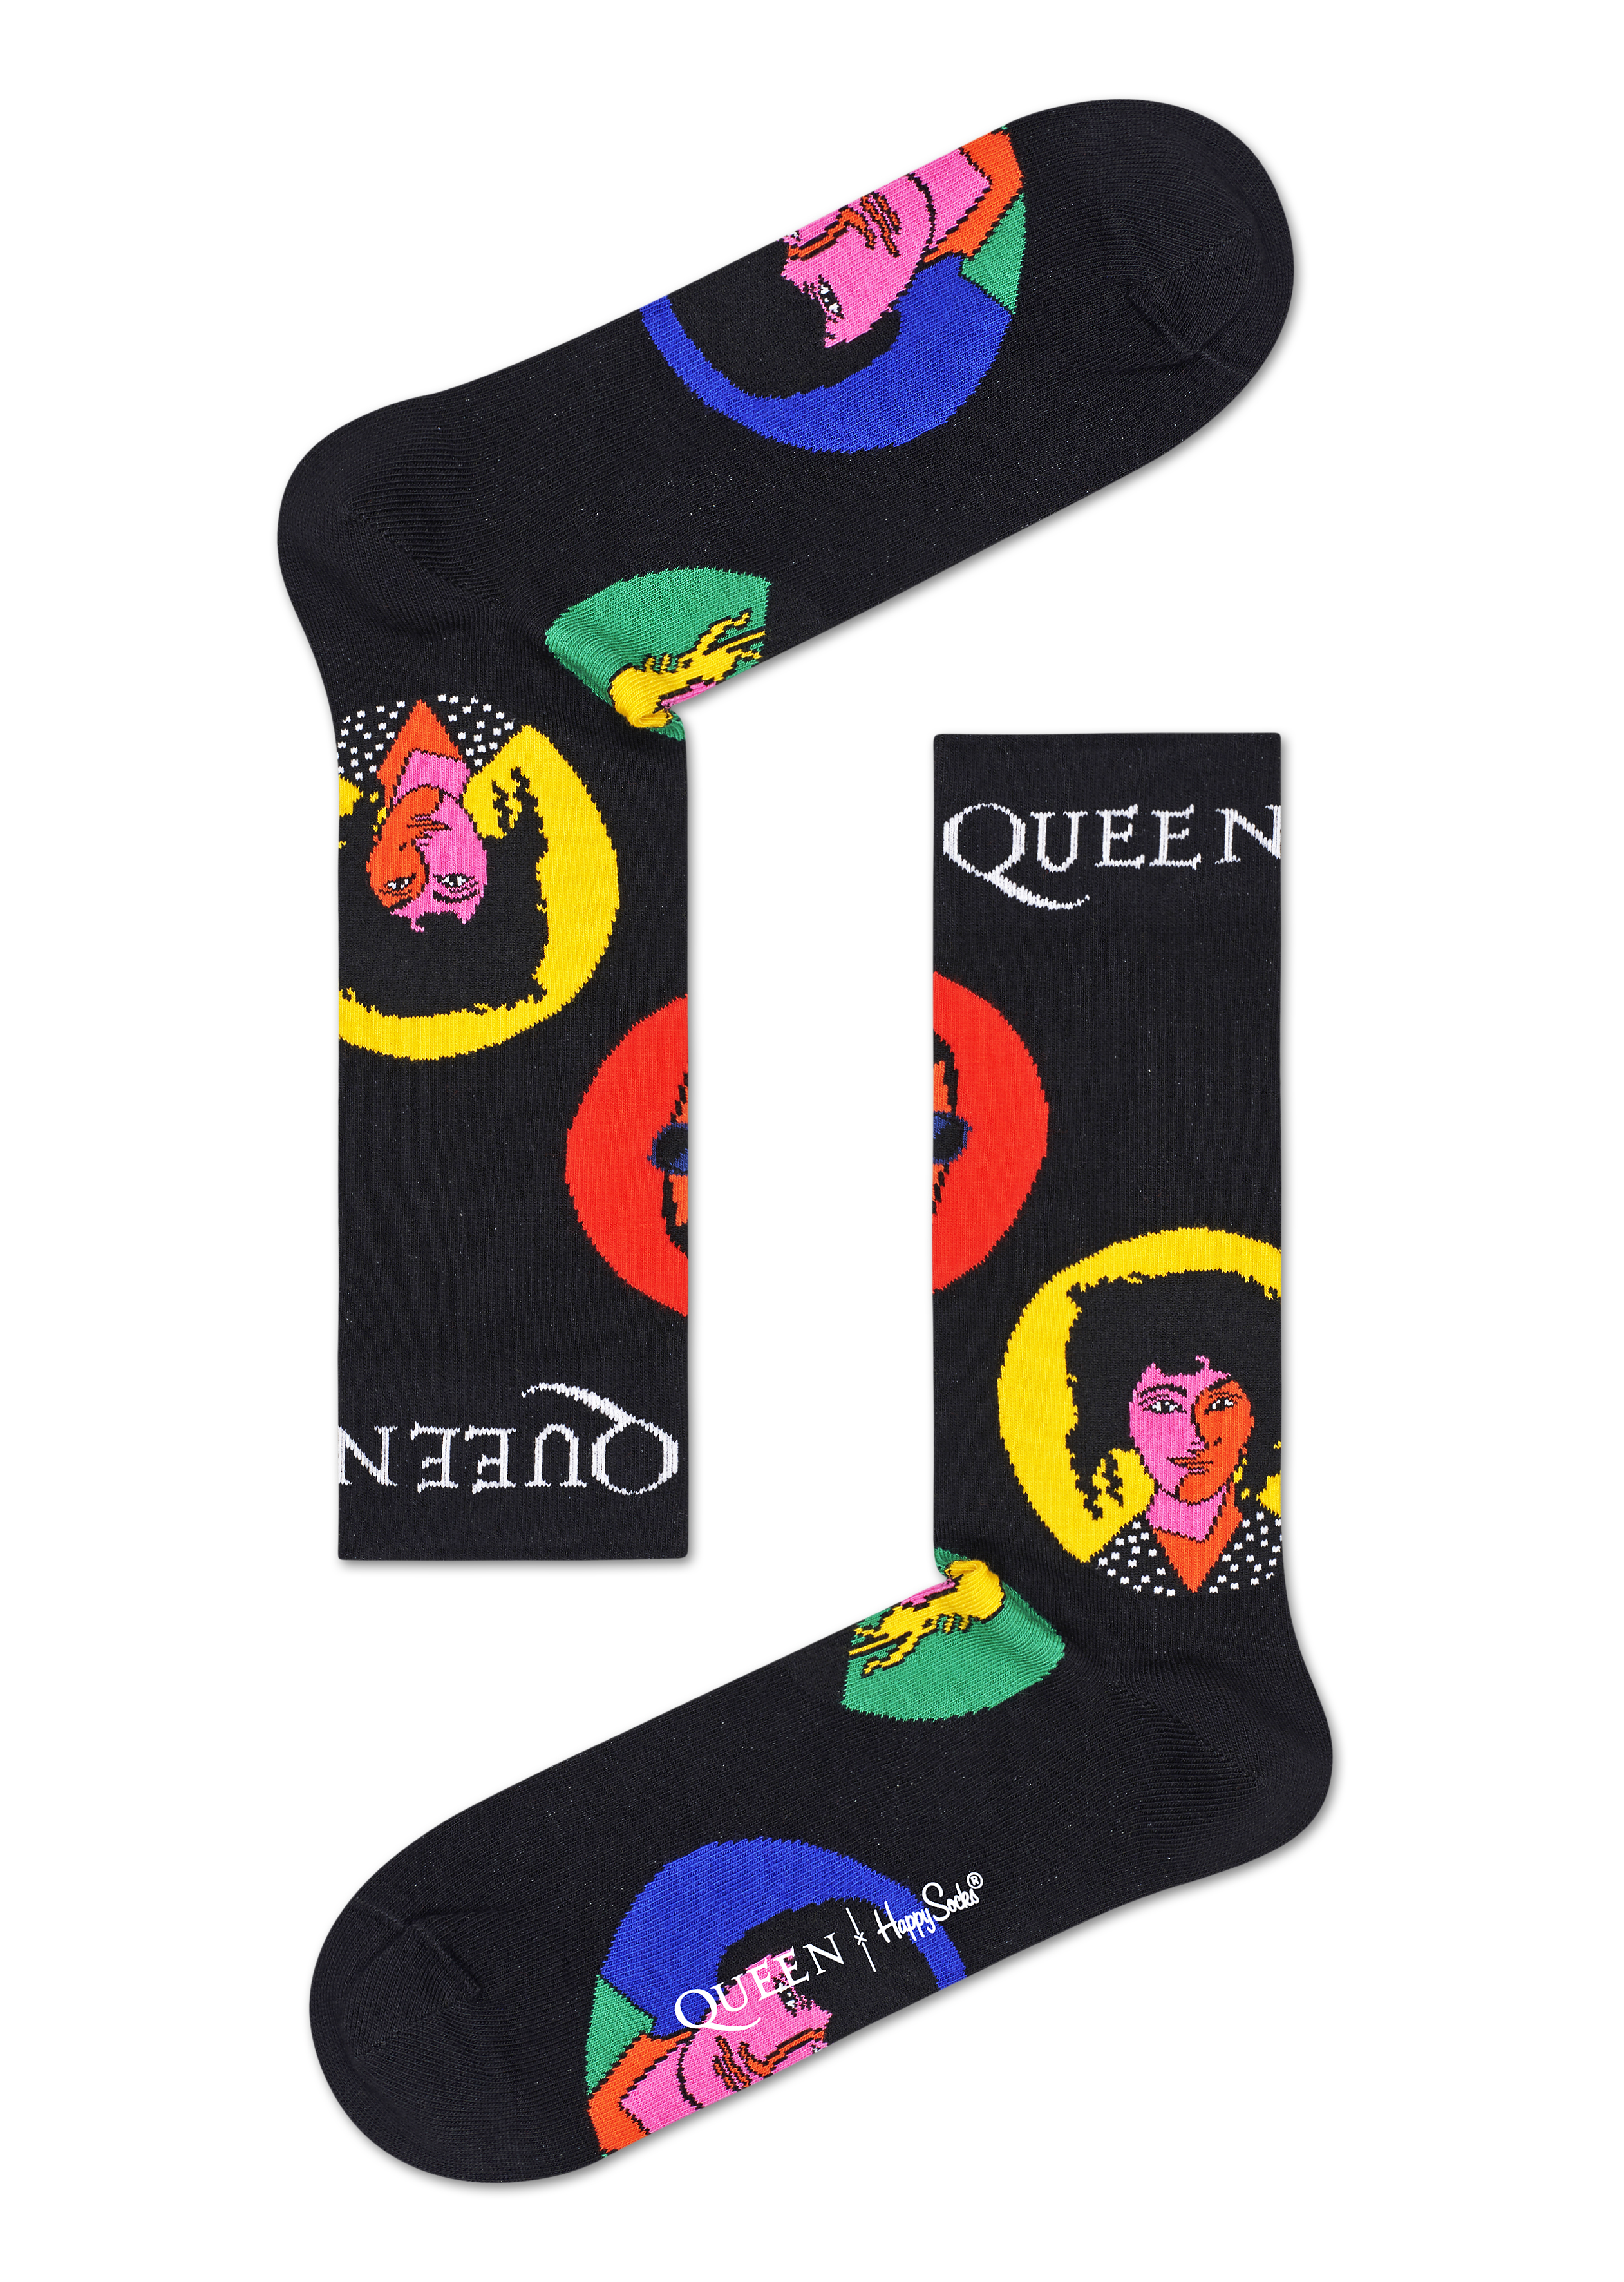 Happy Socks i samarbete med Queen - Dopest